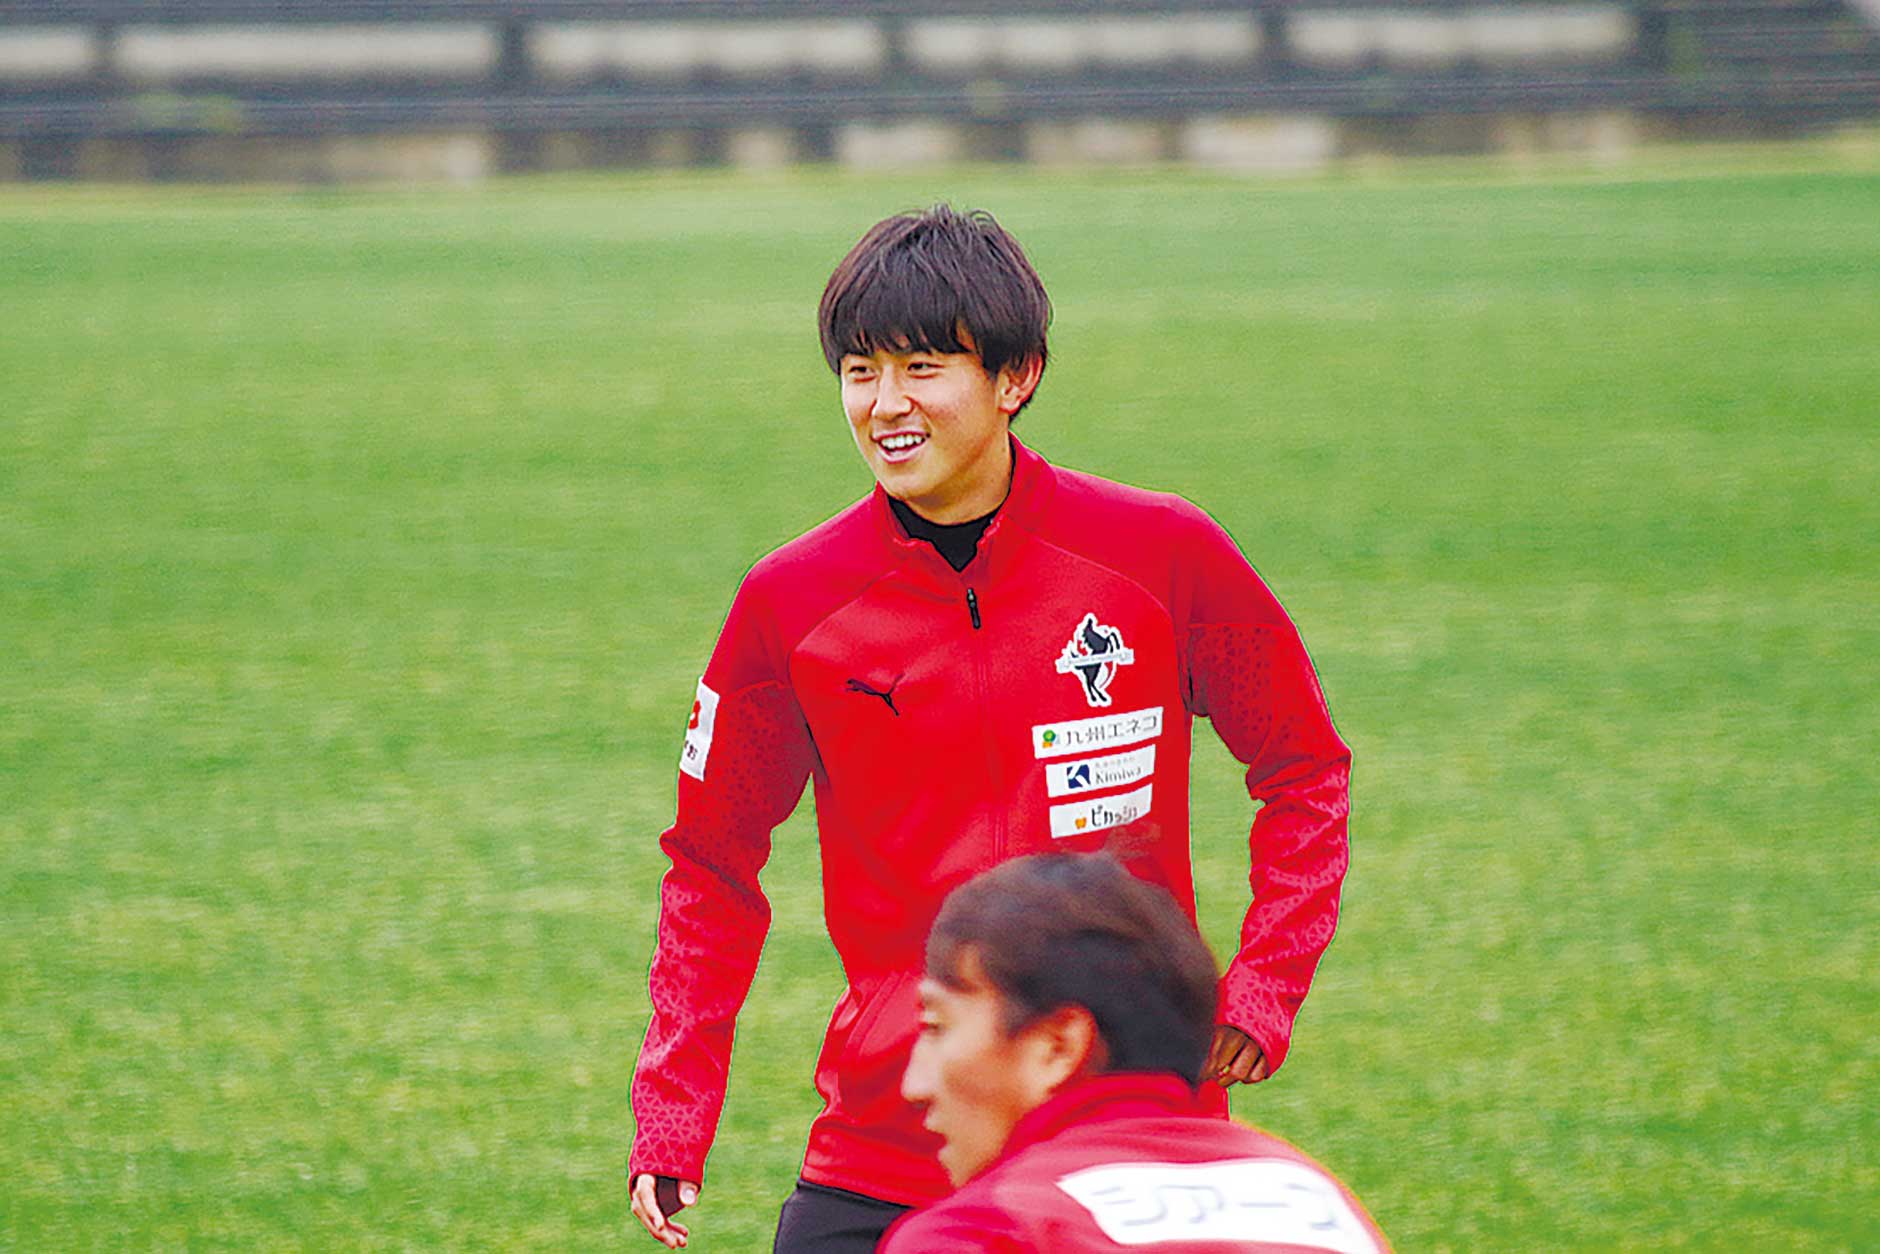 練習中はご覧のような優しい笑顔も見せますが、試合中はりりしさが増す松岡選手